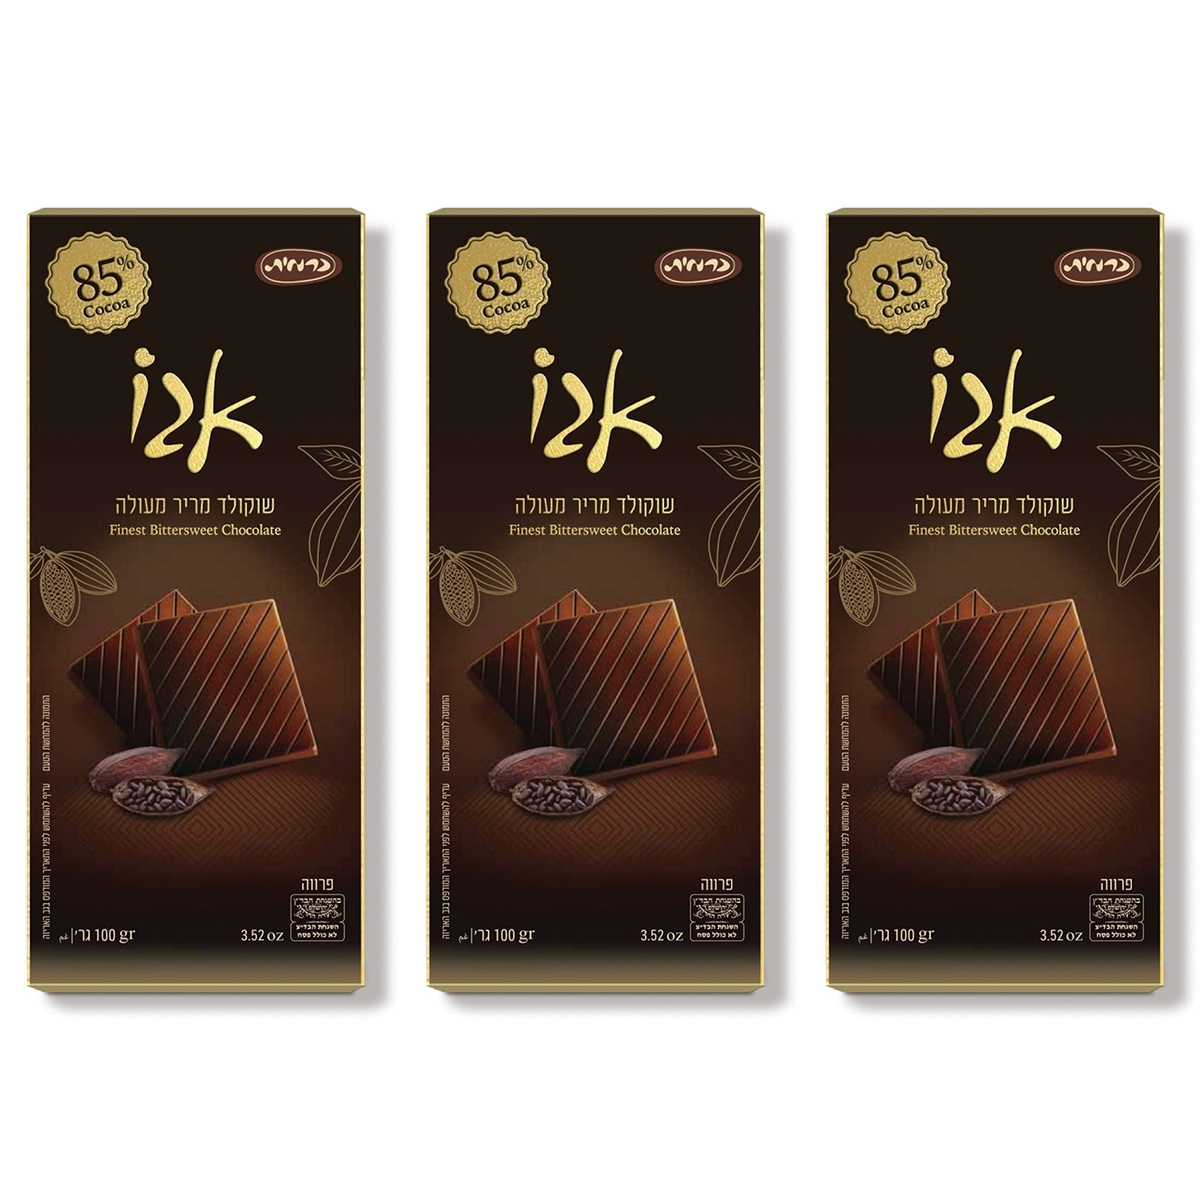 3-Pack of Kosher Premium 85% Cocoa Dark Chocolate Bars - 1